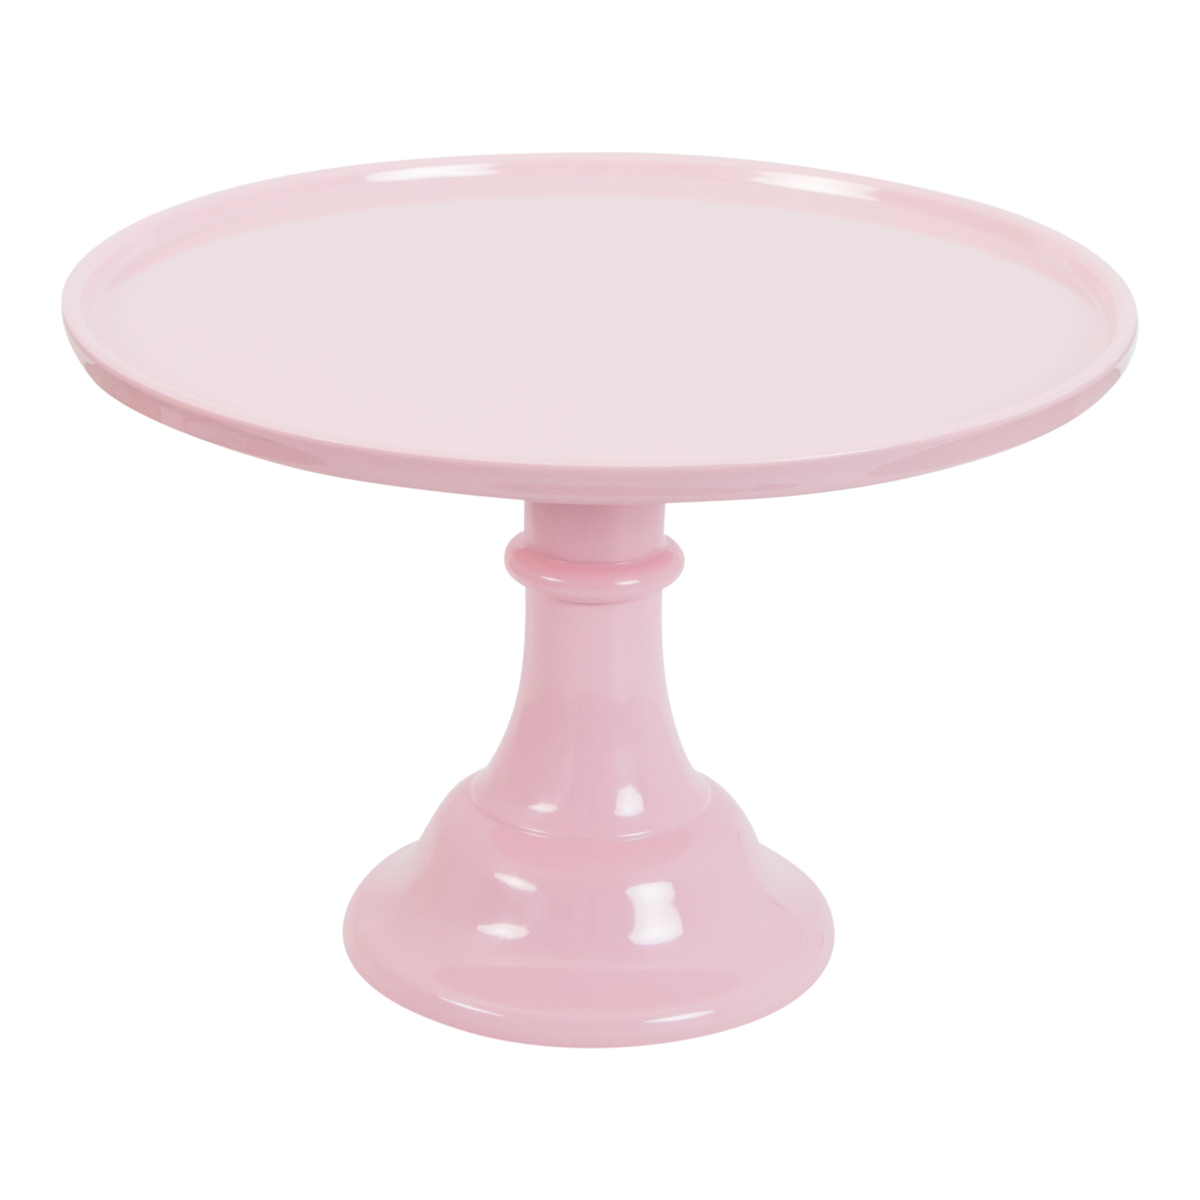 Imagen de producto: Stand rosa de melamina 30 cm